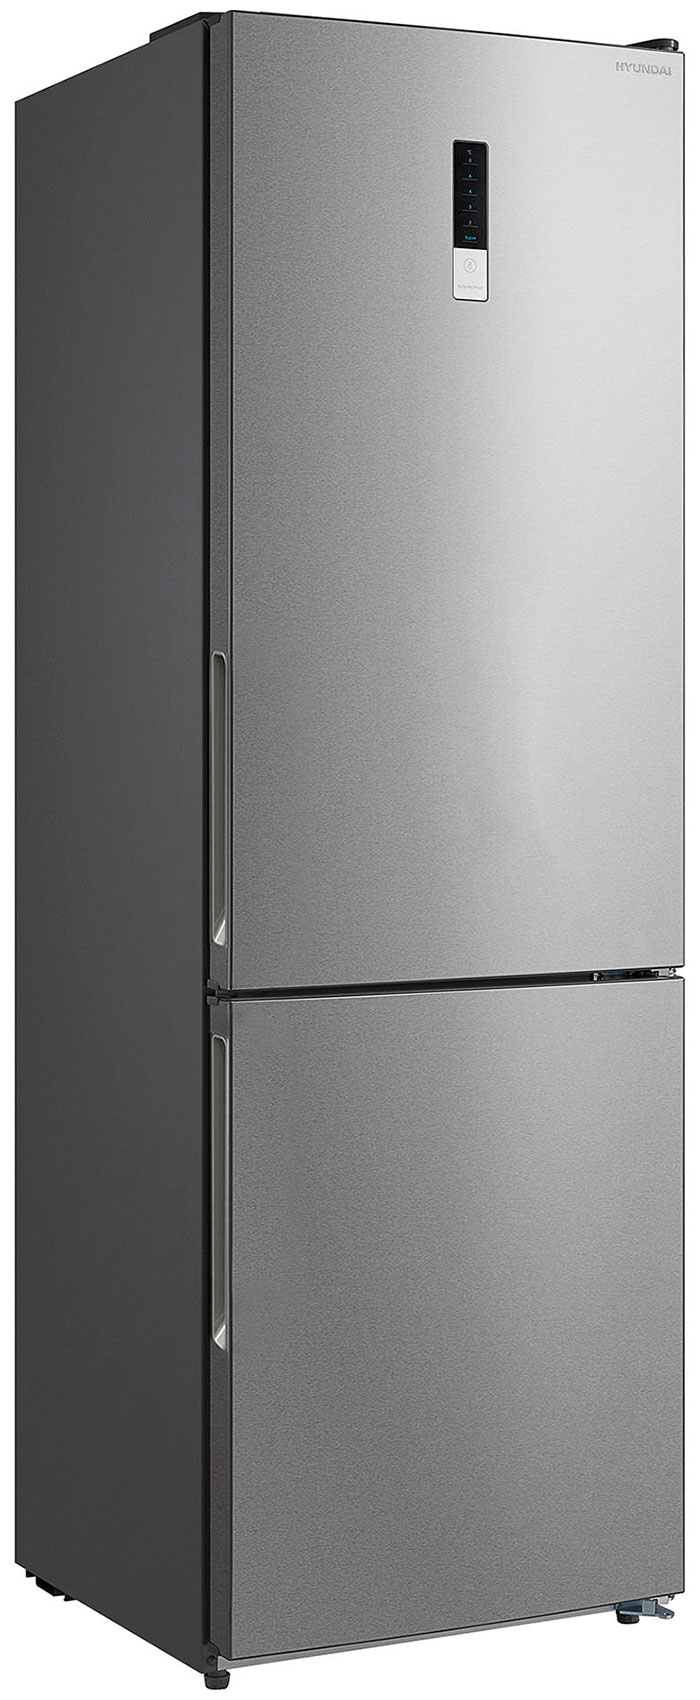 Двухкамерный холодильник Hyundai CC3595FIX нержавеющая сталь тюбинг frost серия профи цвет в ассортименте 115 см